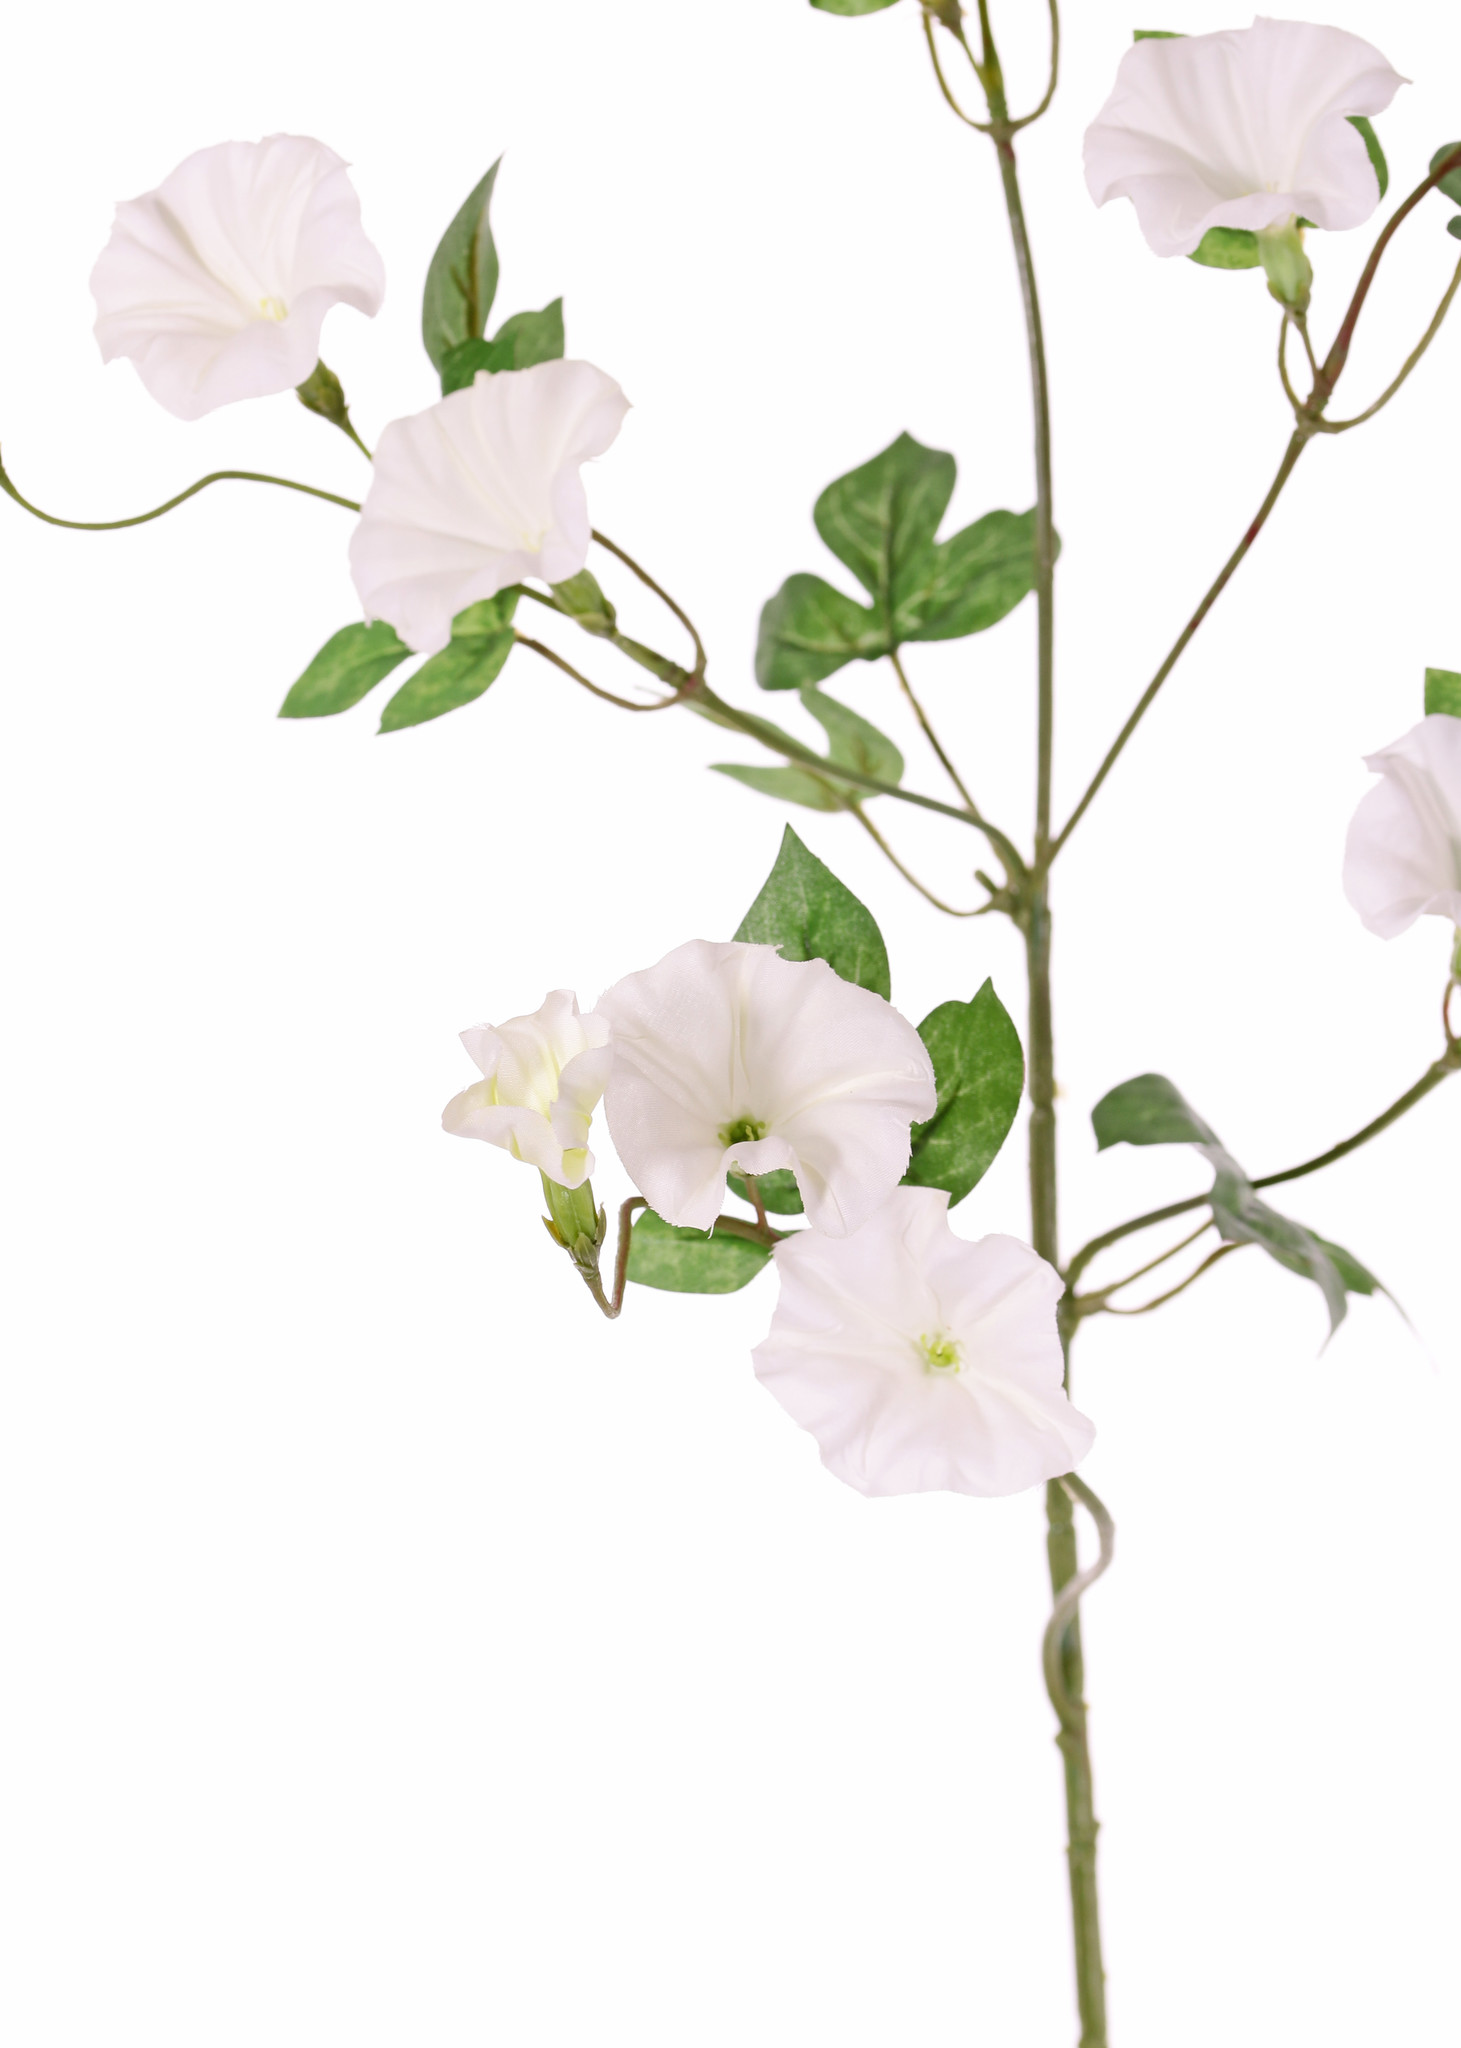 Winden (Convolvulaceae) 4 Verzweigungen, 15 Blumen, 14 Blätter, 63 cm